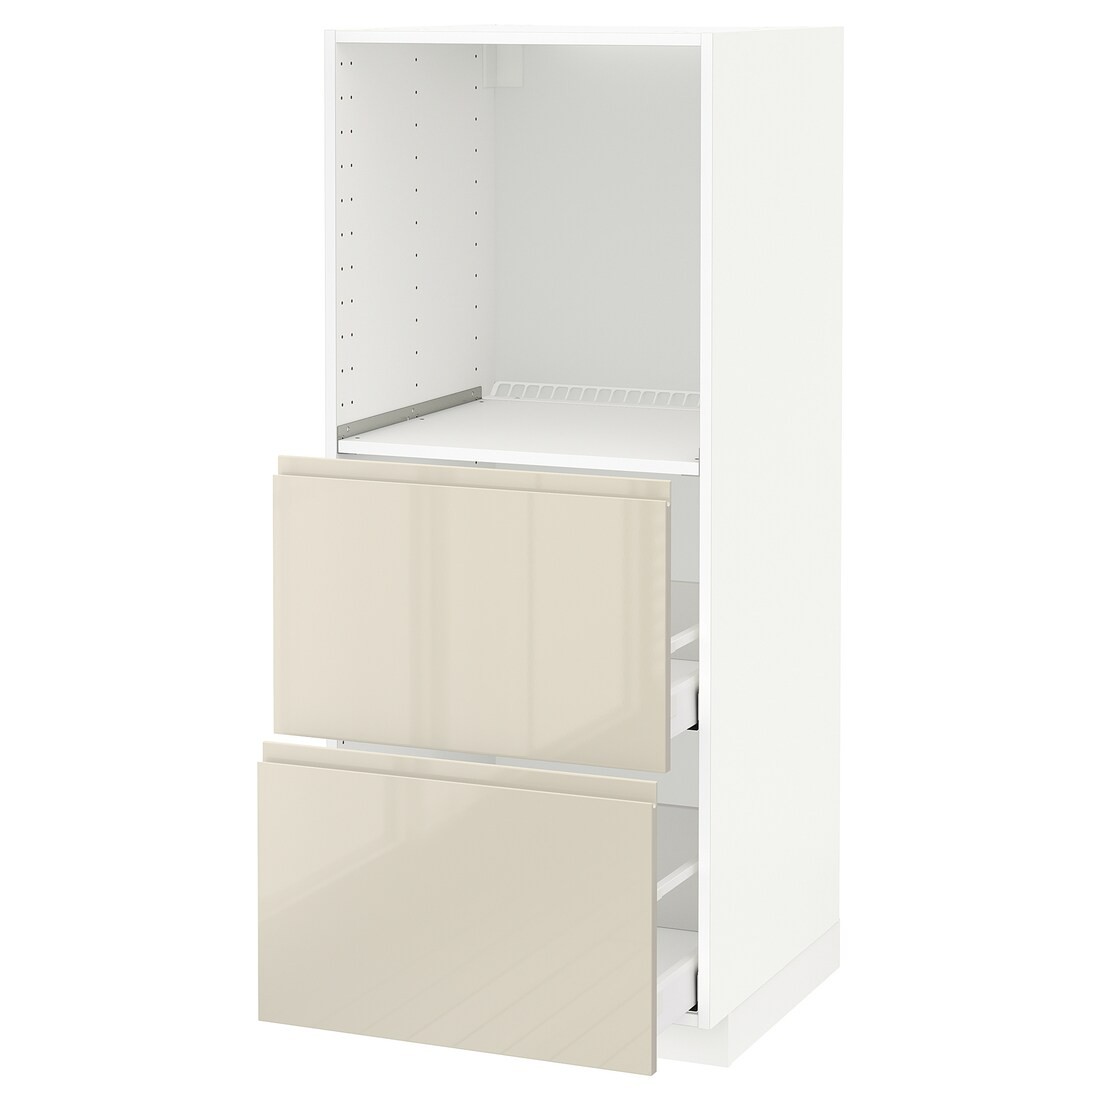 METOD МЕТОД / MAXIMERA МАКСИМЕРА Высокий шкаф с 2 ящиками для духовки, белый / Voxtorp глянцевый светло-бежевый, 60x60x140 см